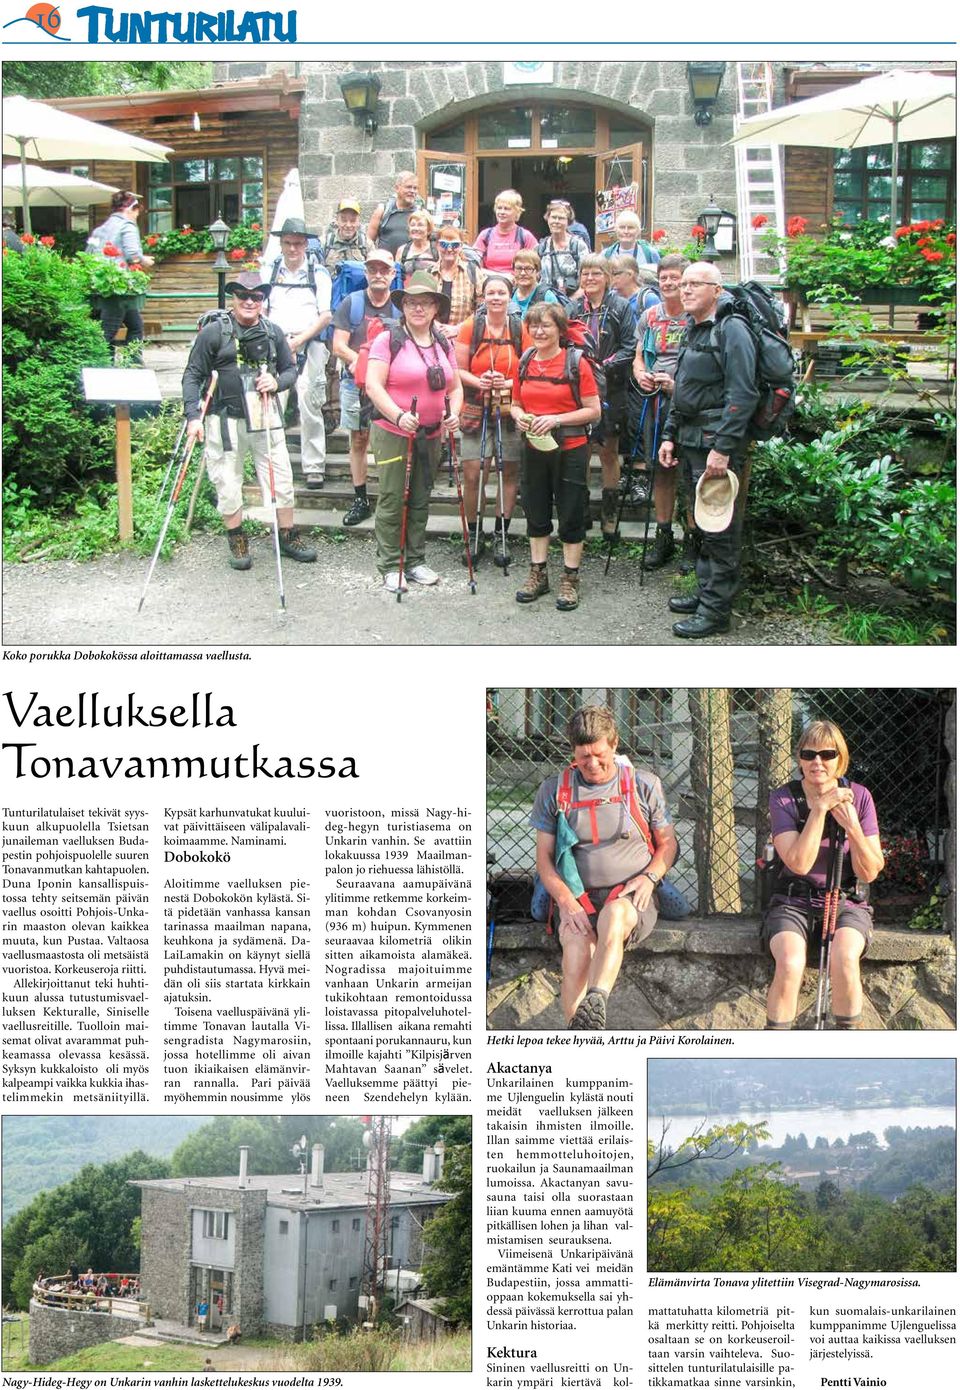 Duna Iponin kansallispuistossa tehty seitsemän päivän vaellus osoitti Pohjois-Unkarin maaston olevan kaikkea muuta, kun Pustaa. Valtaosa vaellusmaastosta oli metsäistä vuoristoa. Korkeuseroja riitti.